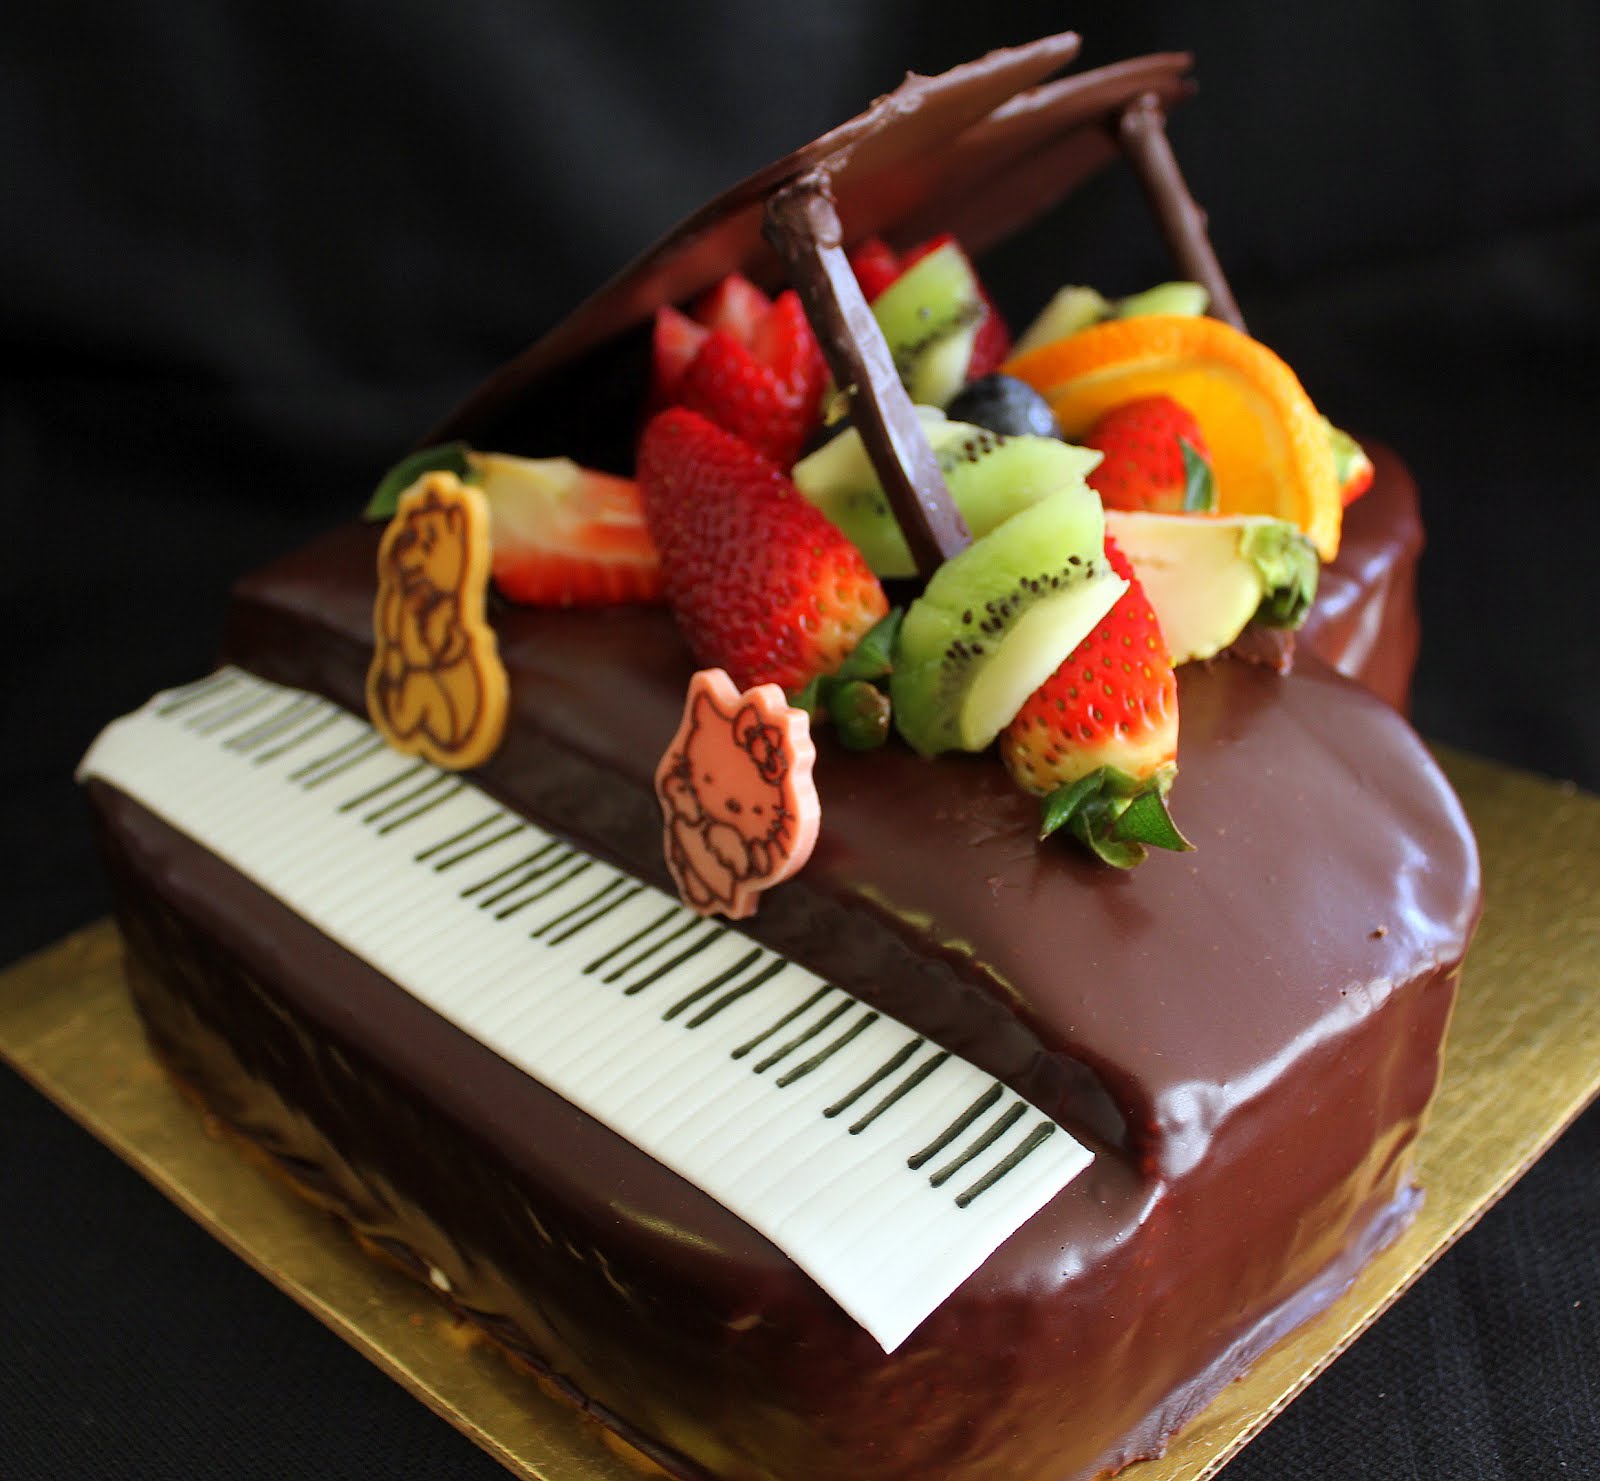 钢琴娃娃生日蛋糕裱花蛋糕#相约MOF#的做法_【图解】钢琴娃娃生日蛋糕裱花蛋糕#相约MOF#怎么做如何做好吃_钢琴娃娃生日蛋糕裱花蛋糕#相约MOF#家常做法大全_桔子甜品_豆果美食